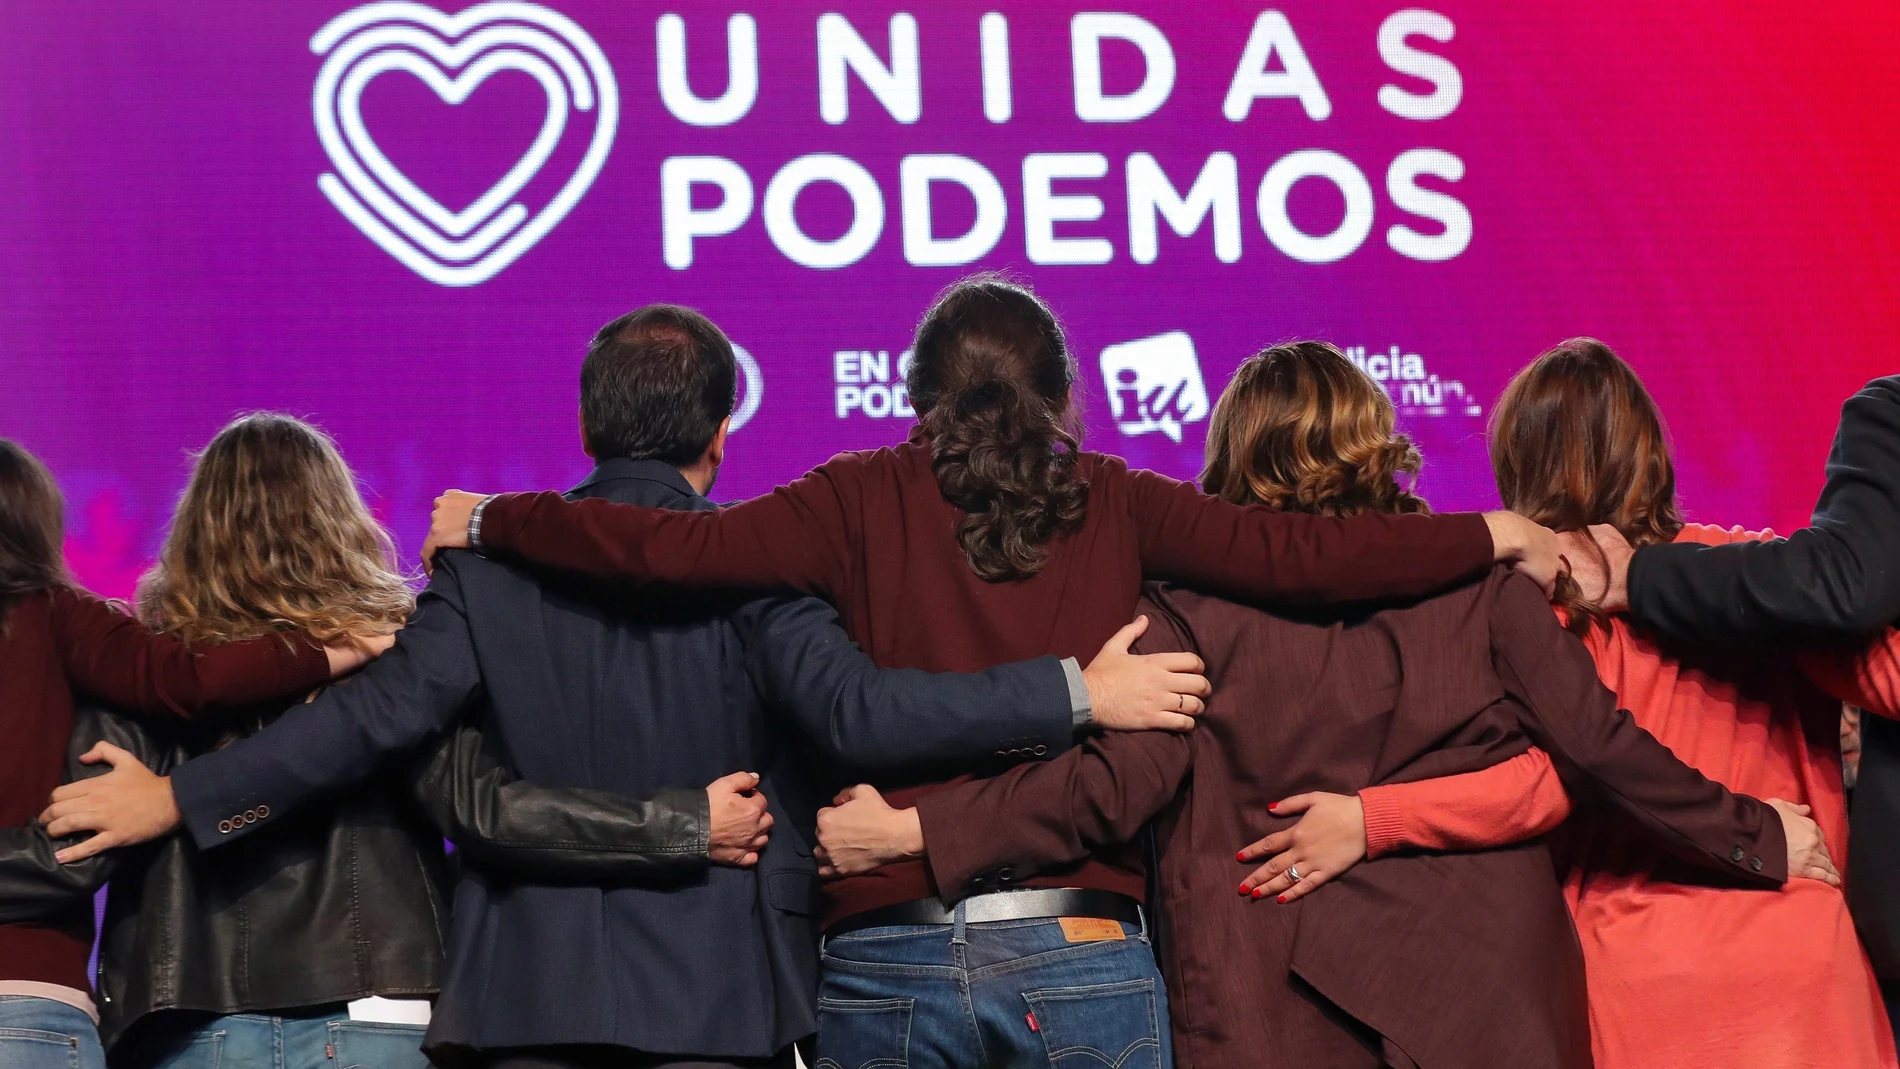 El líder de Unidas Podemos, Pablo Iglesias (c); el coordinador general de Izquierda Unida y cabeza de lista de Unidas Podemos al Congreso por Málaga, Alberto Garzón (2i); y la alcaldesa de Barcelona, Ada Colau (2d), intervienen en el acto de cierre de campaña de la formación, que ha tenido lugar este viernes en Ifema, Madrid.